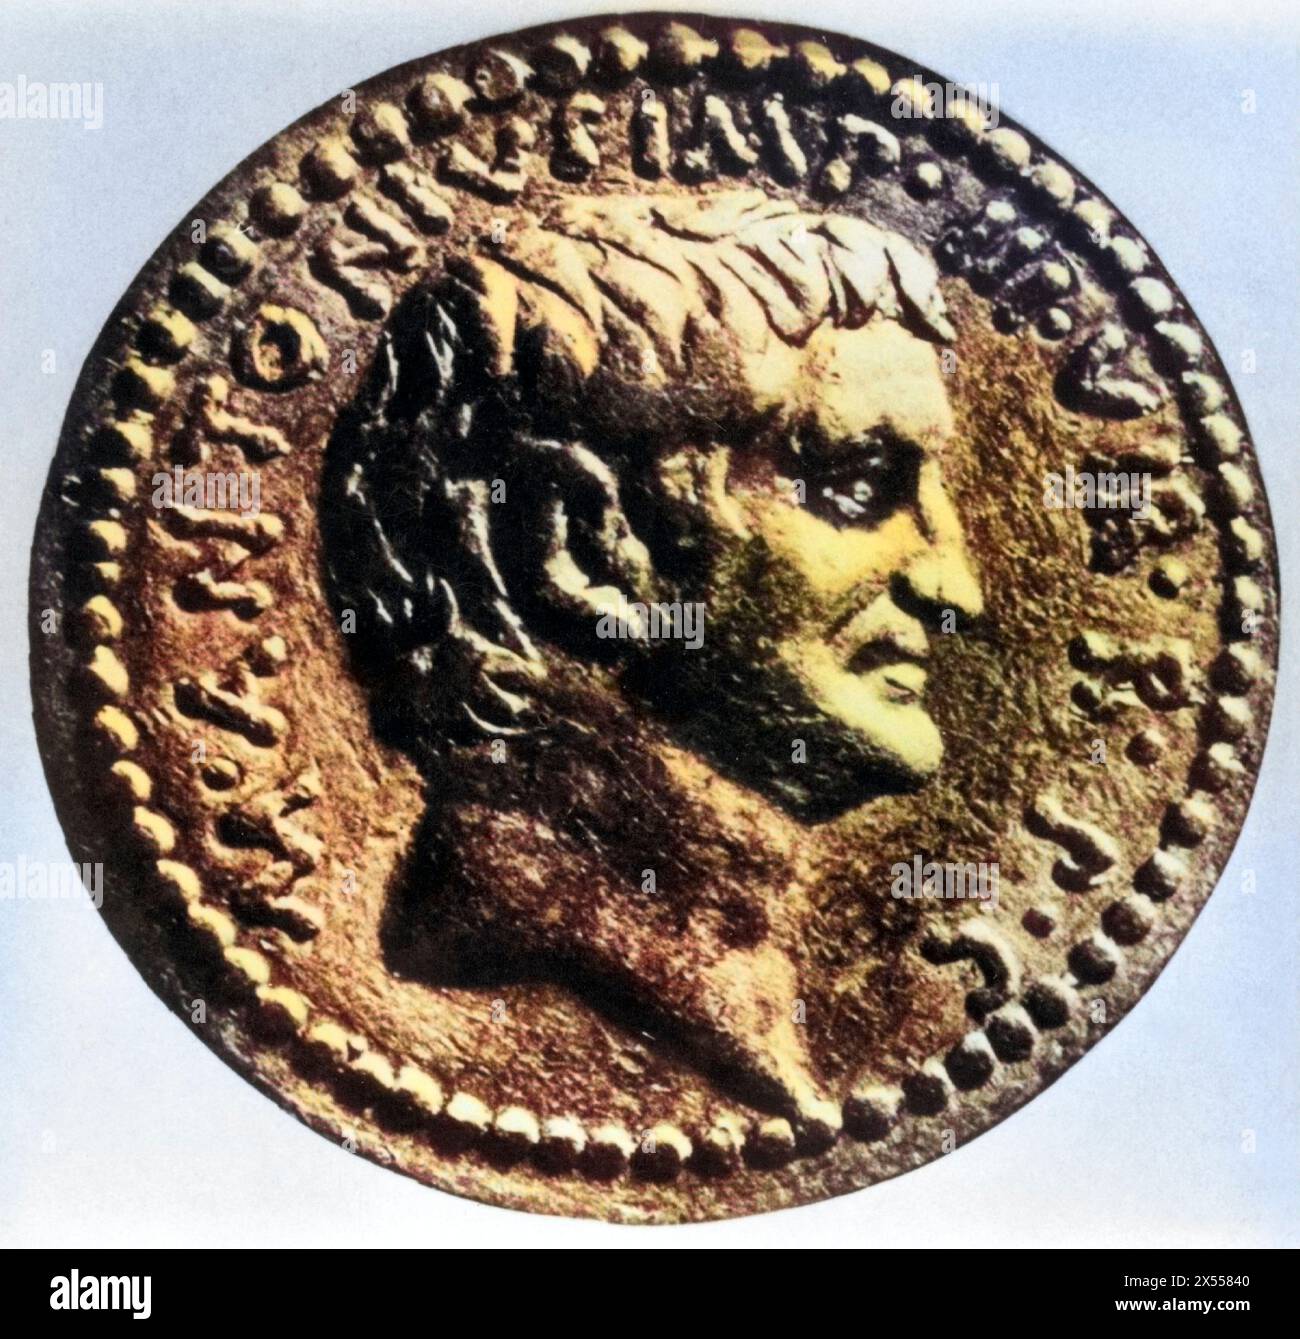 Antonius, Marcus, ca. 82–30 v. Chr., römischer Politiker und General, Porträt, Seitenansicht, Münze, ADDITIONAL-RIGHTS-CLEARANCE-INFO-NOT-AVAILABLE Stockfoto